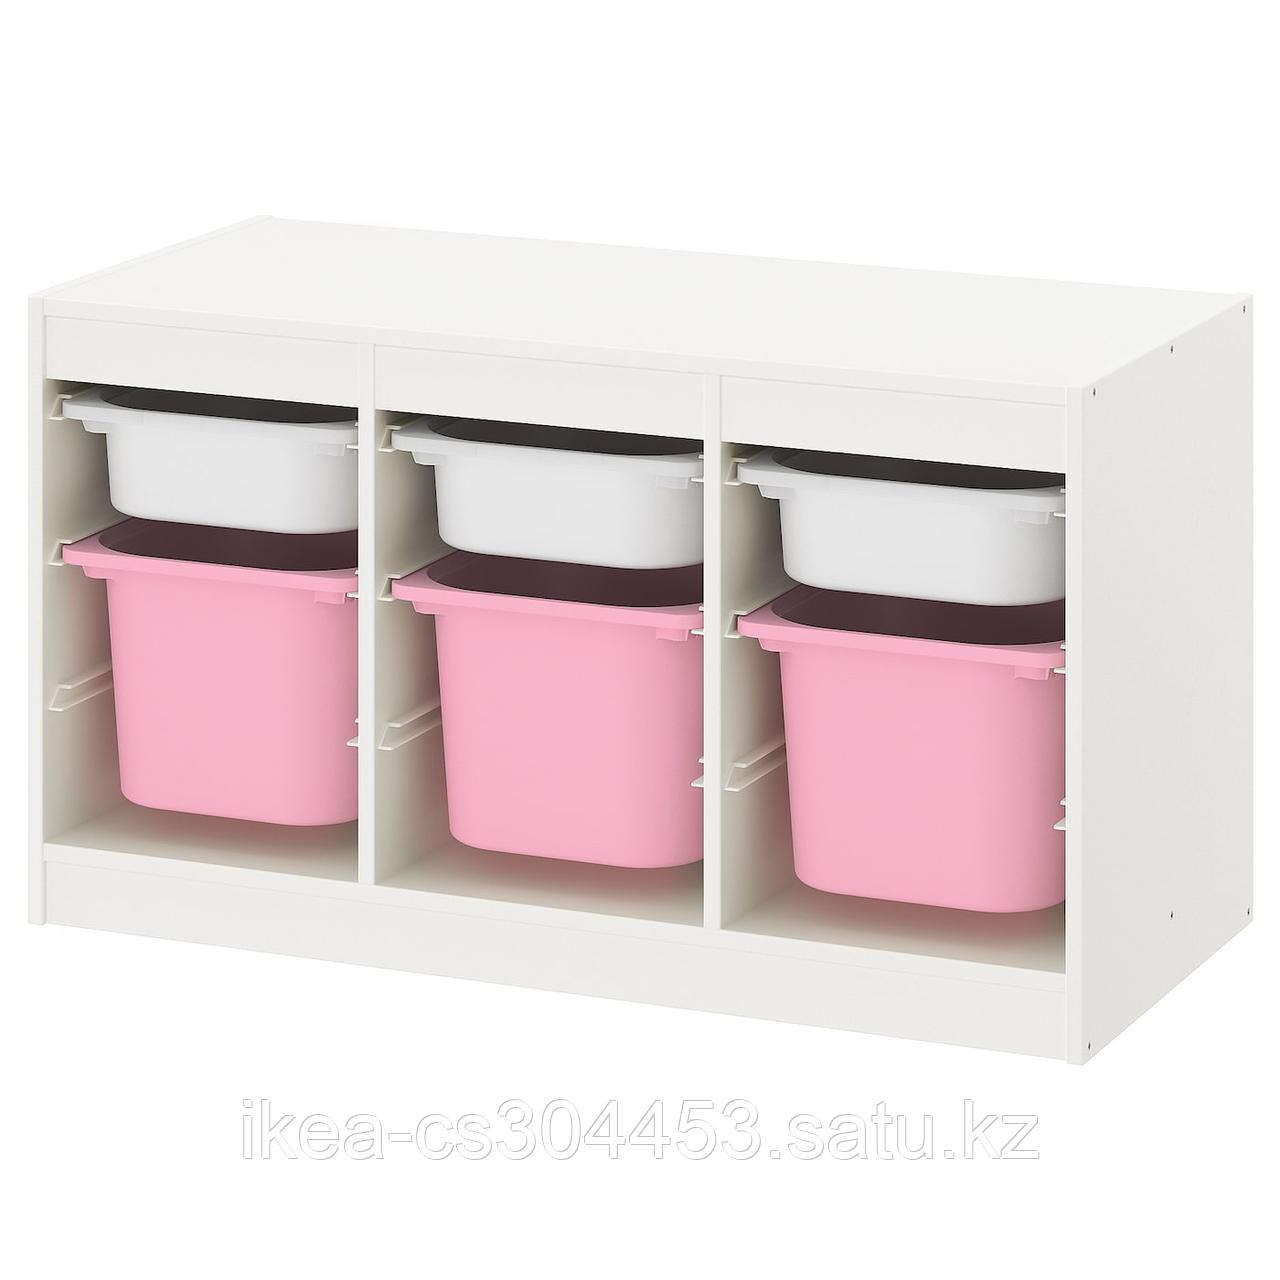 TROFAST ТРУФАСТ Комбинация д/хранения+контейнеры, белый белый/розовый,